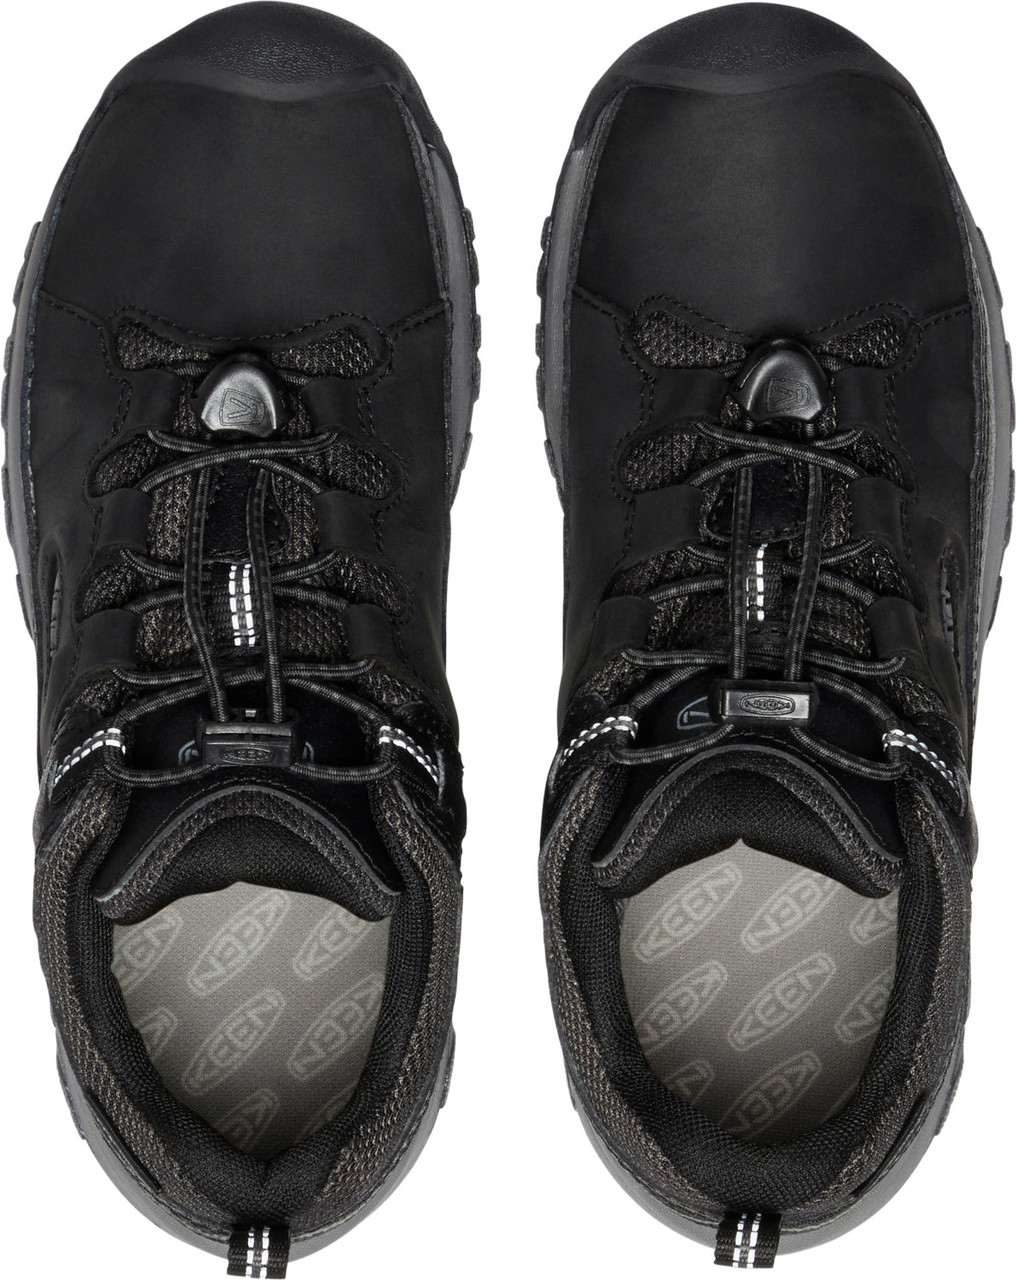 Chaussures imperméables Targhee Low Noir/Gris acier